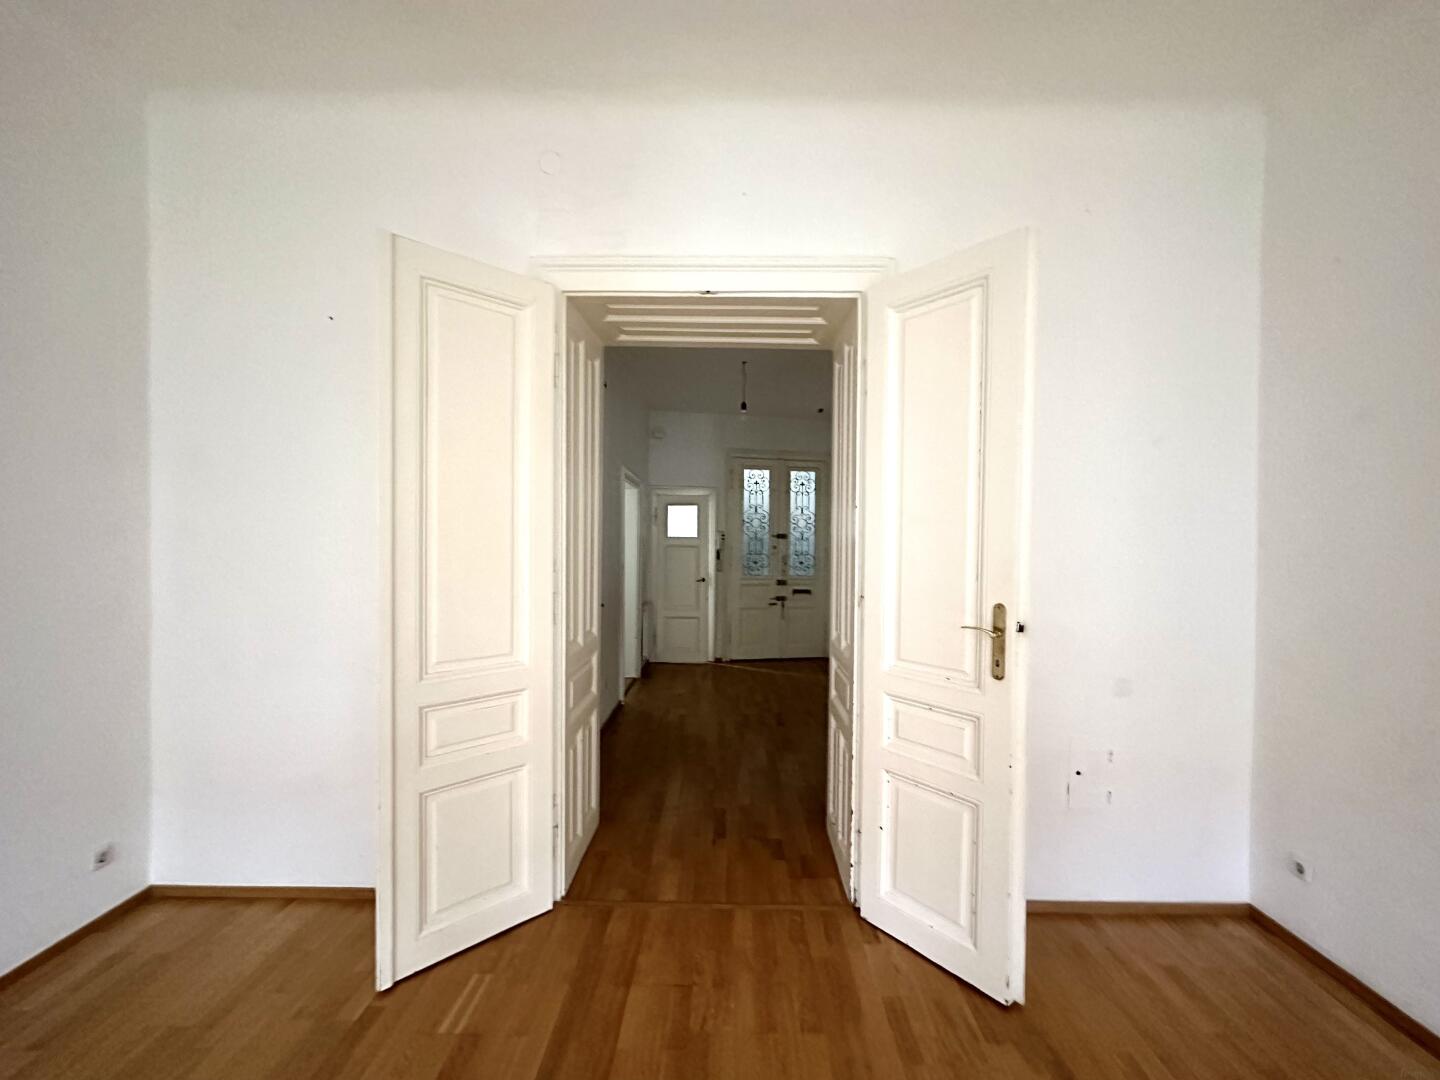 Wohnung zu kaufen: 1120 Wien,Meidling - Blick in den Vorraum